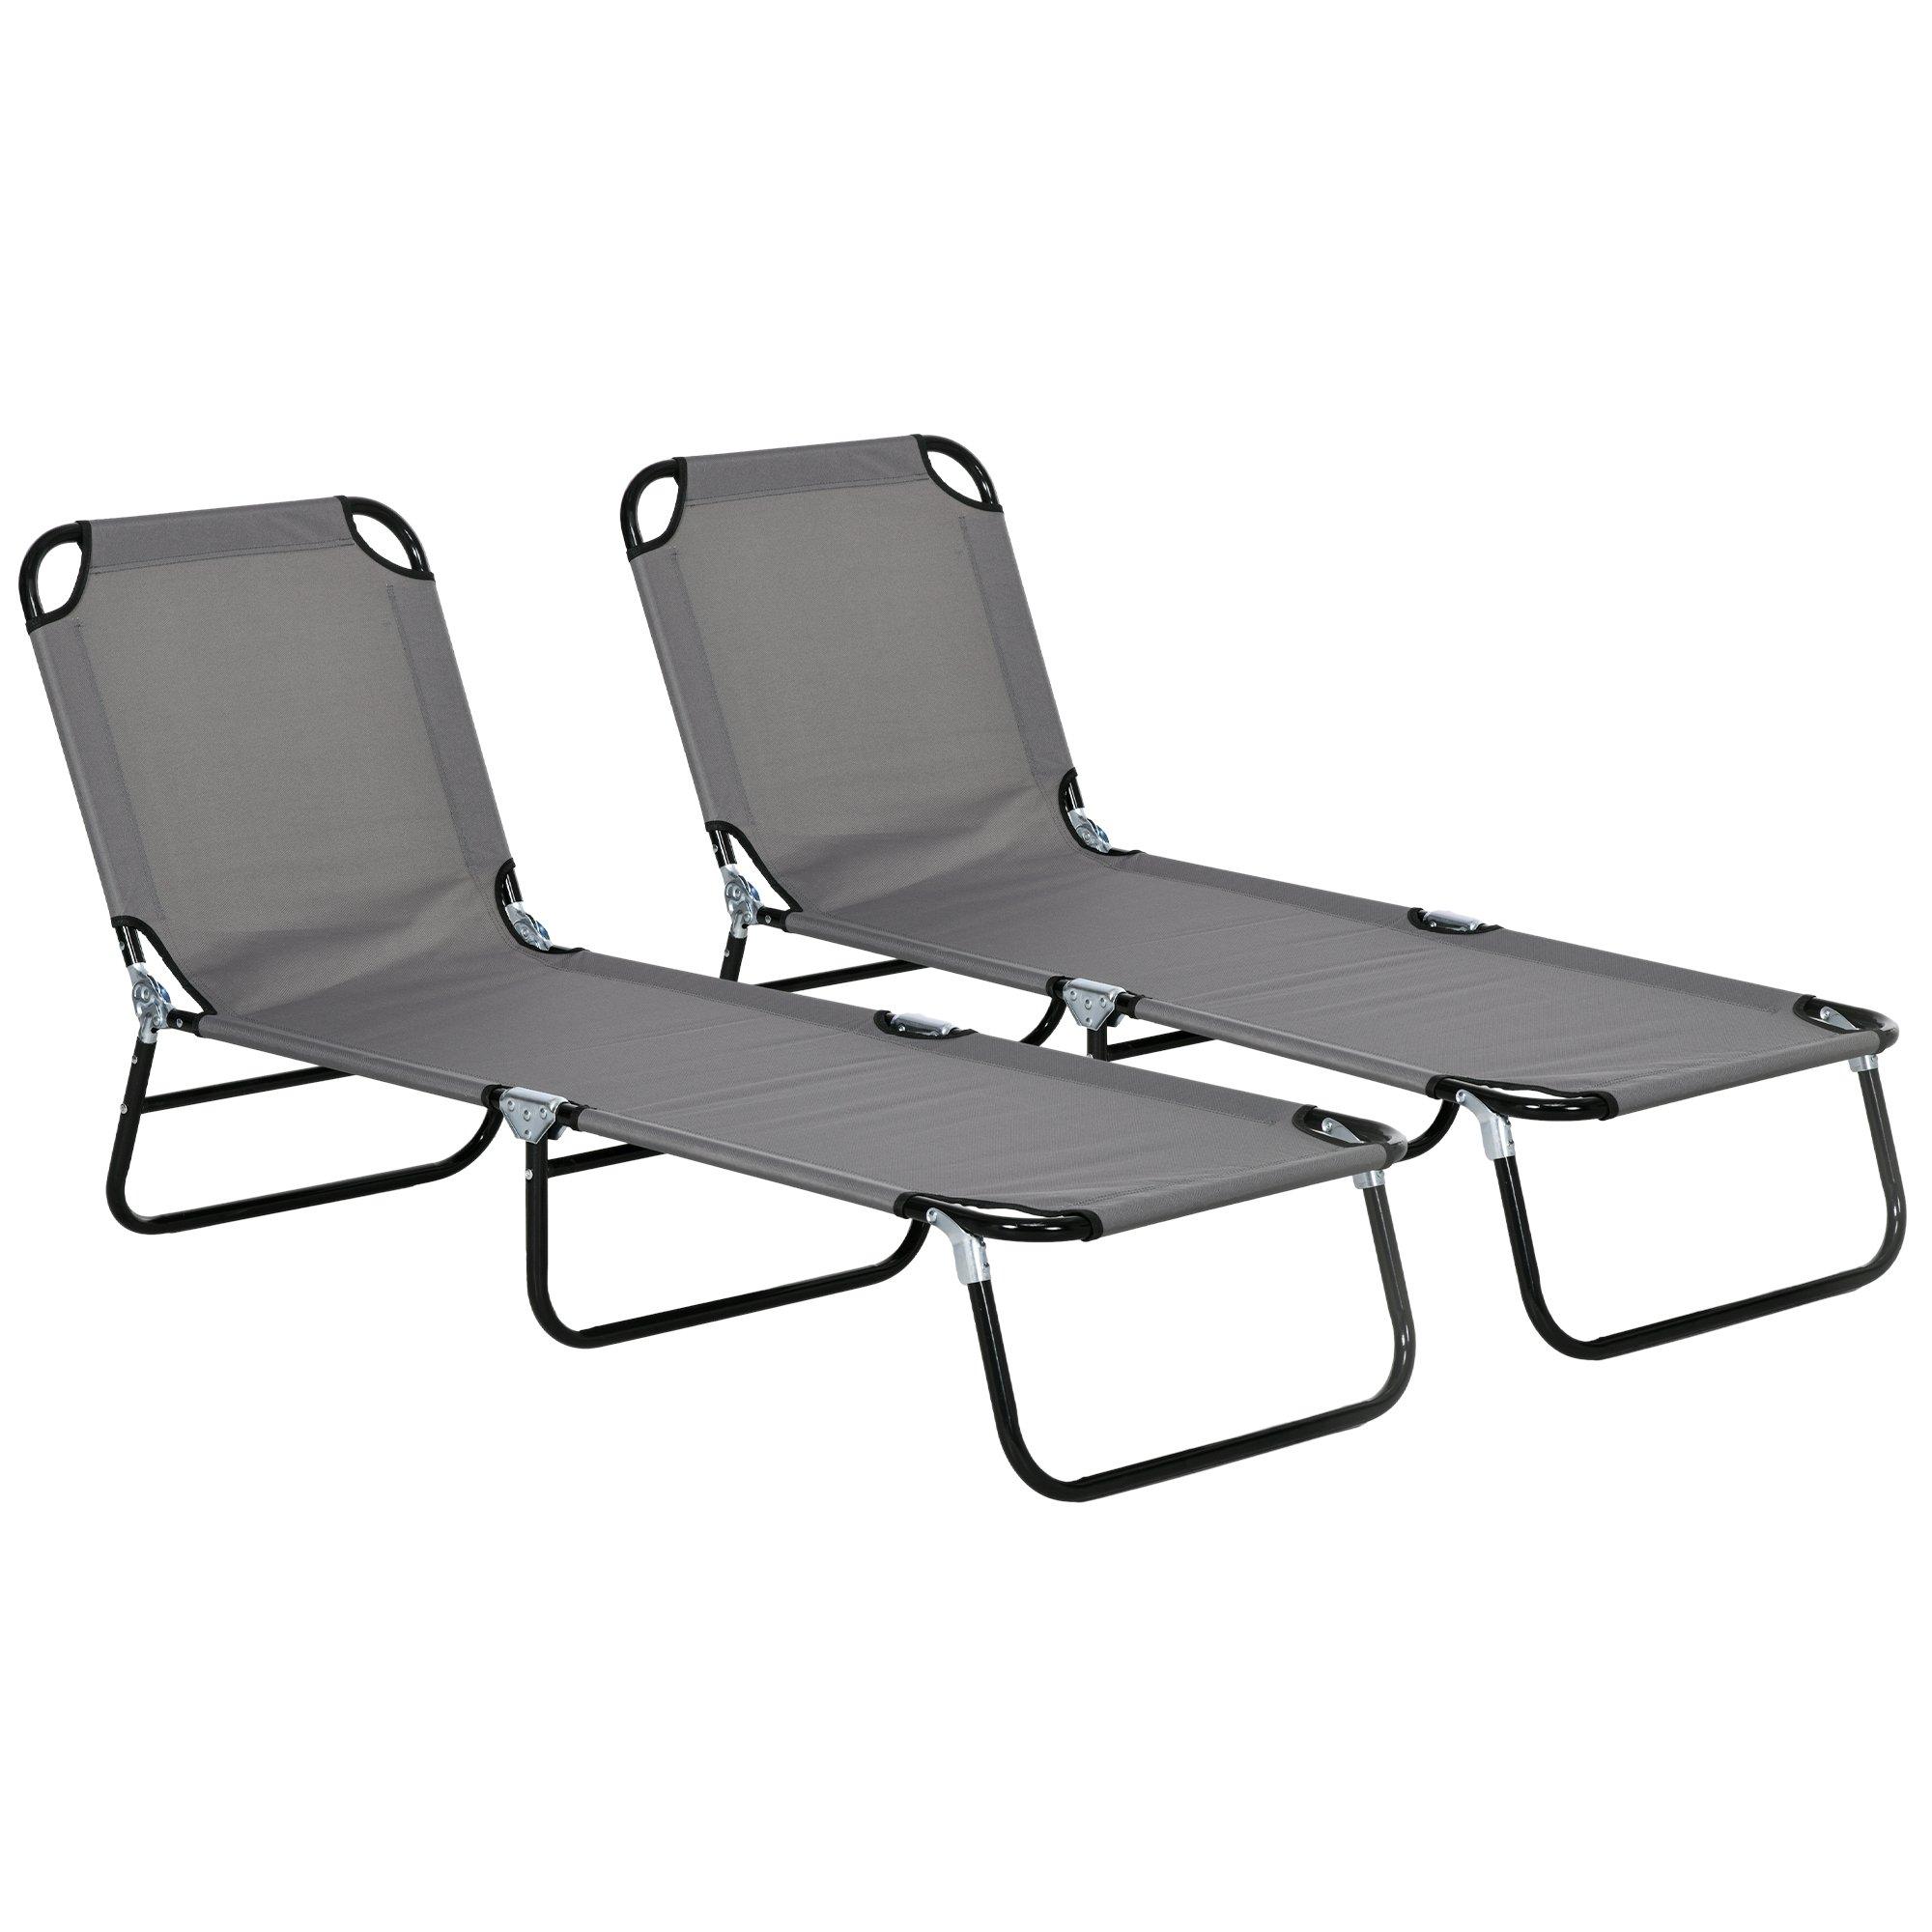 5-Position Poolside Reclining Beach Chair Set of 2 Folding Sun Lounger